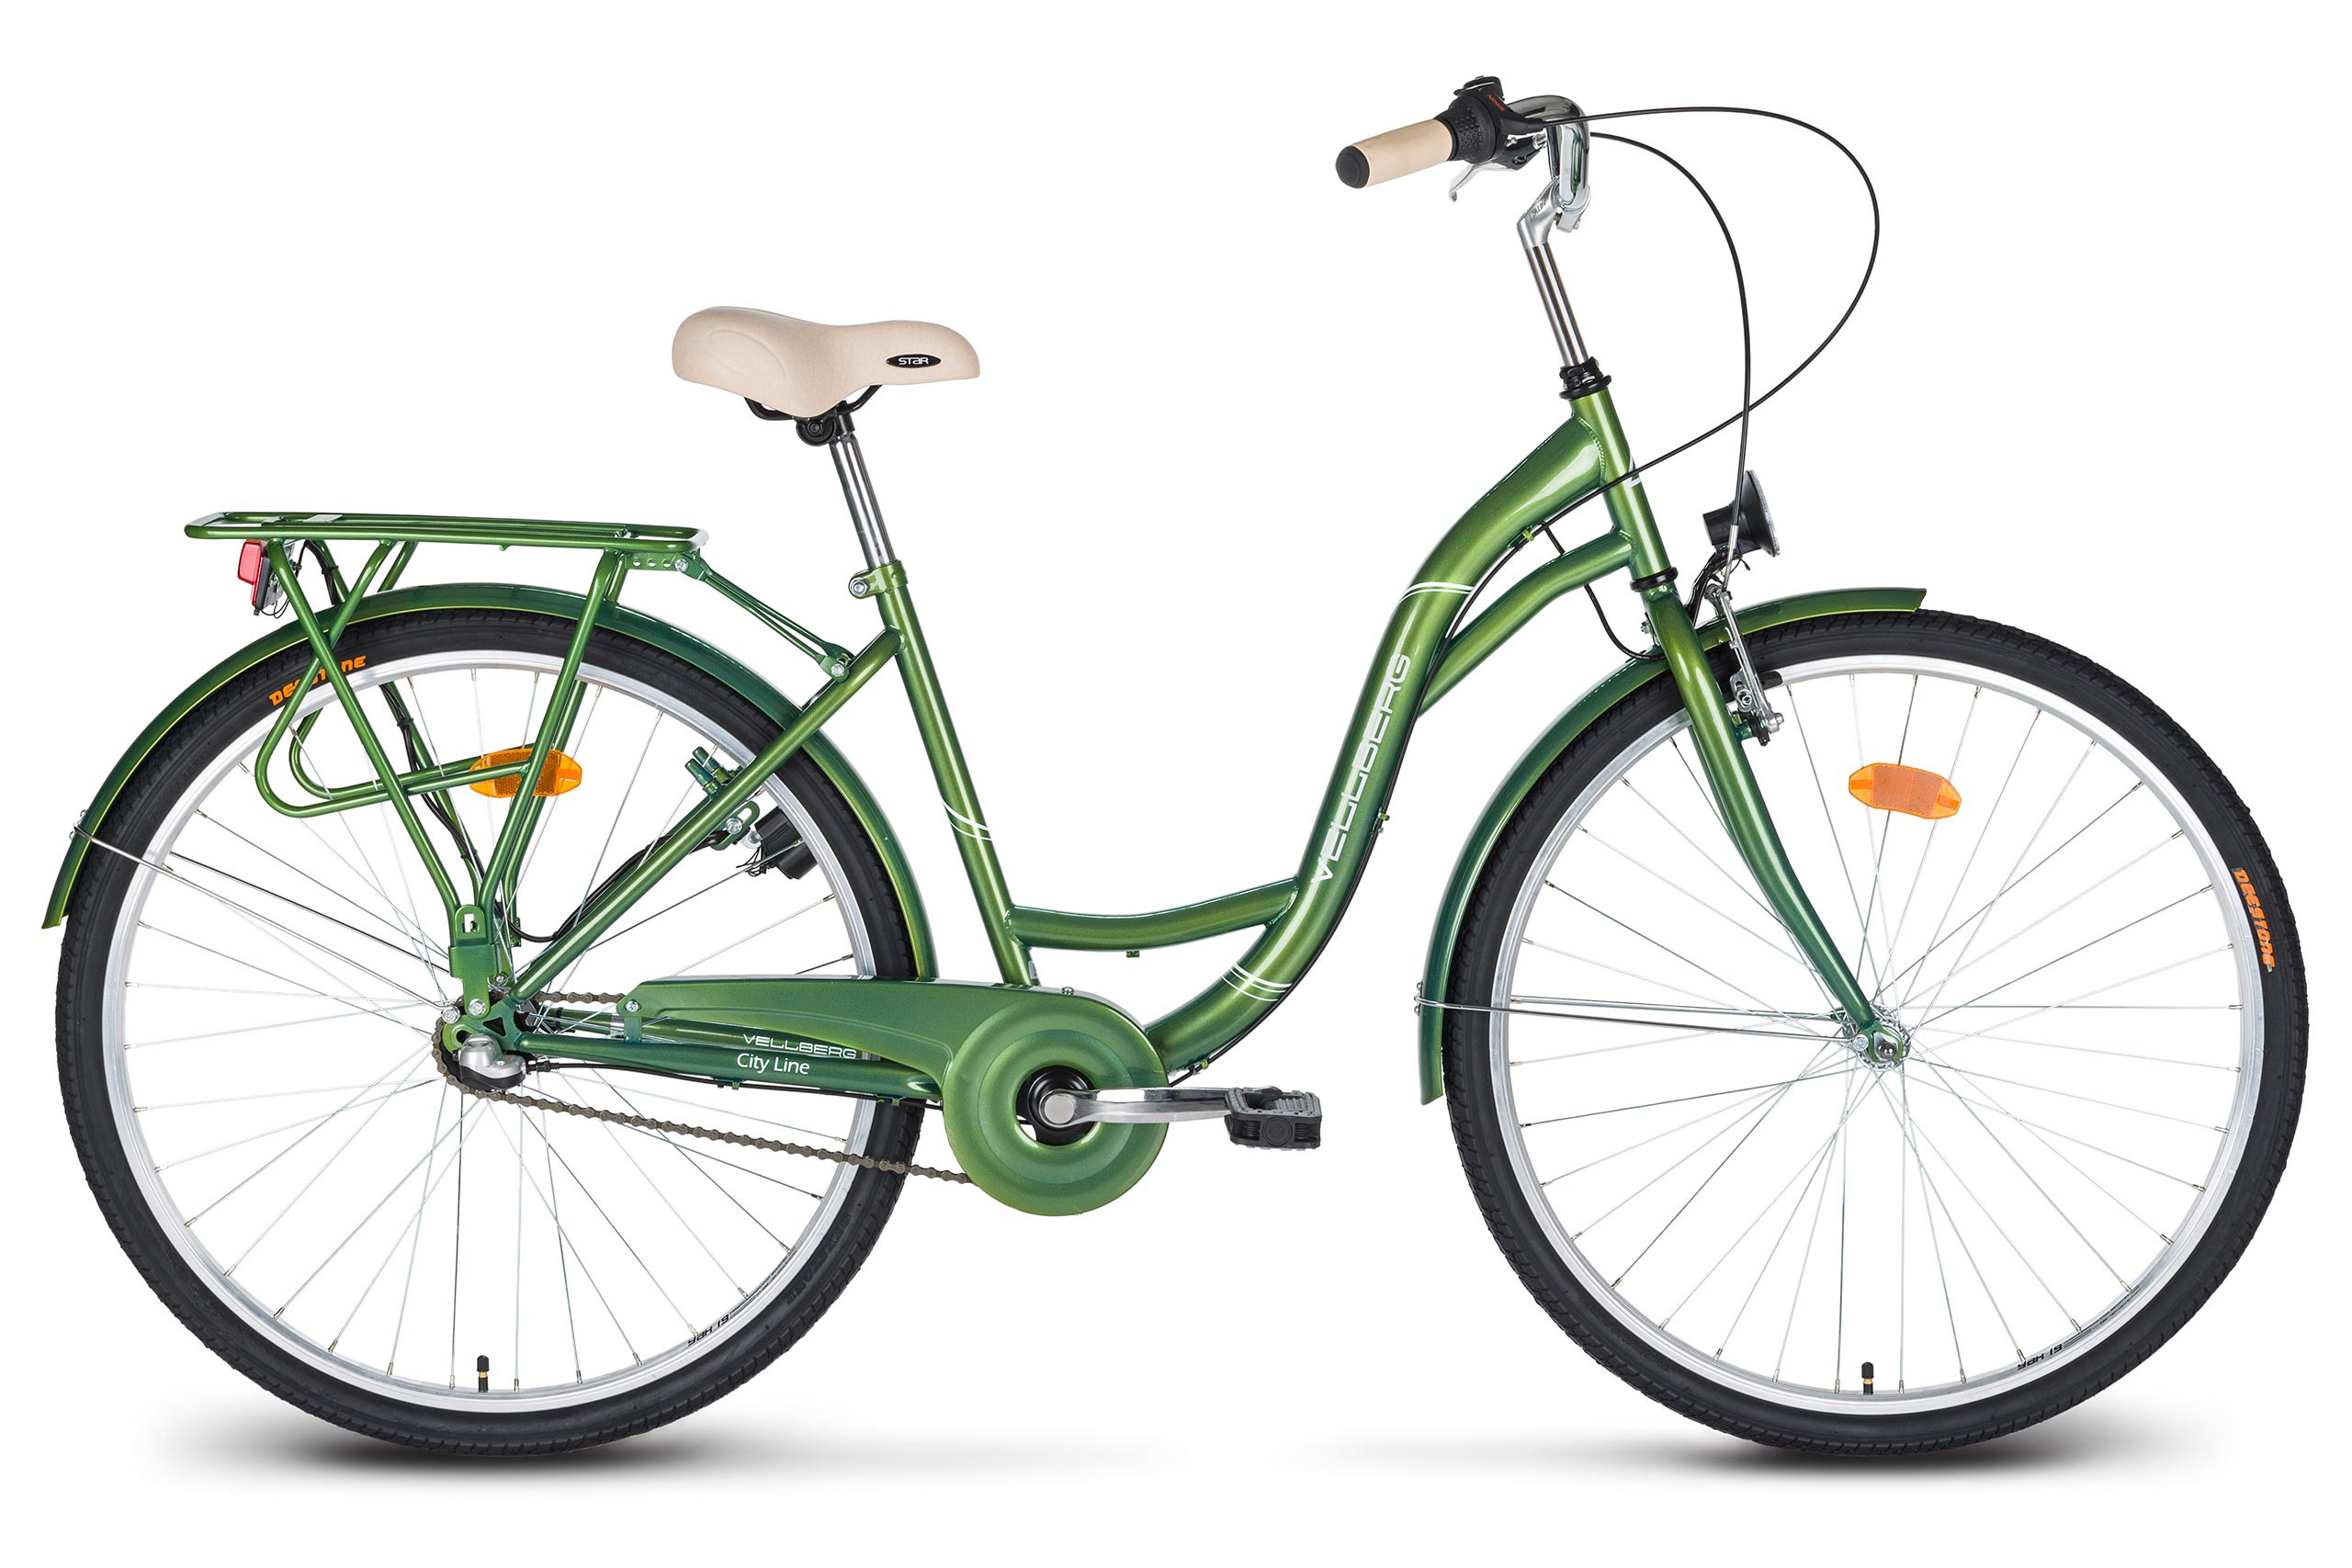 Велосипед купить интернет магазин с доставкой. Altair City line 28. Altair City 28 зеленый серый. Городской велосипед Аист ck9-344. Городской велосипед с планетарной втулкой.